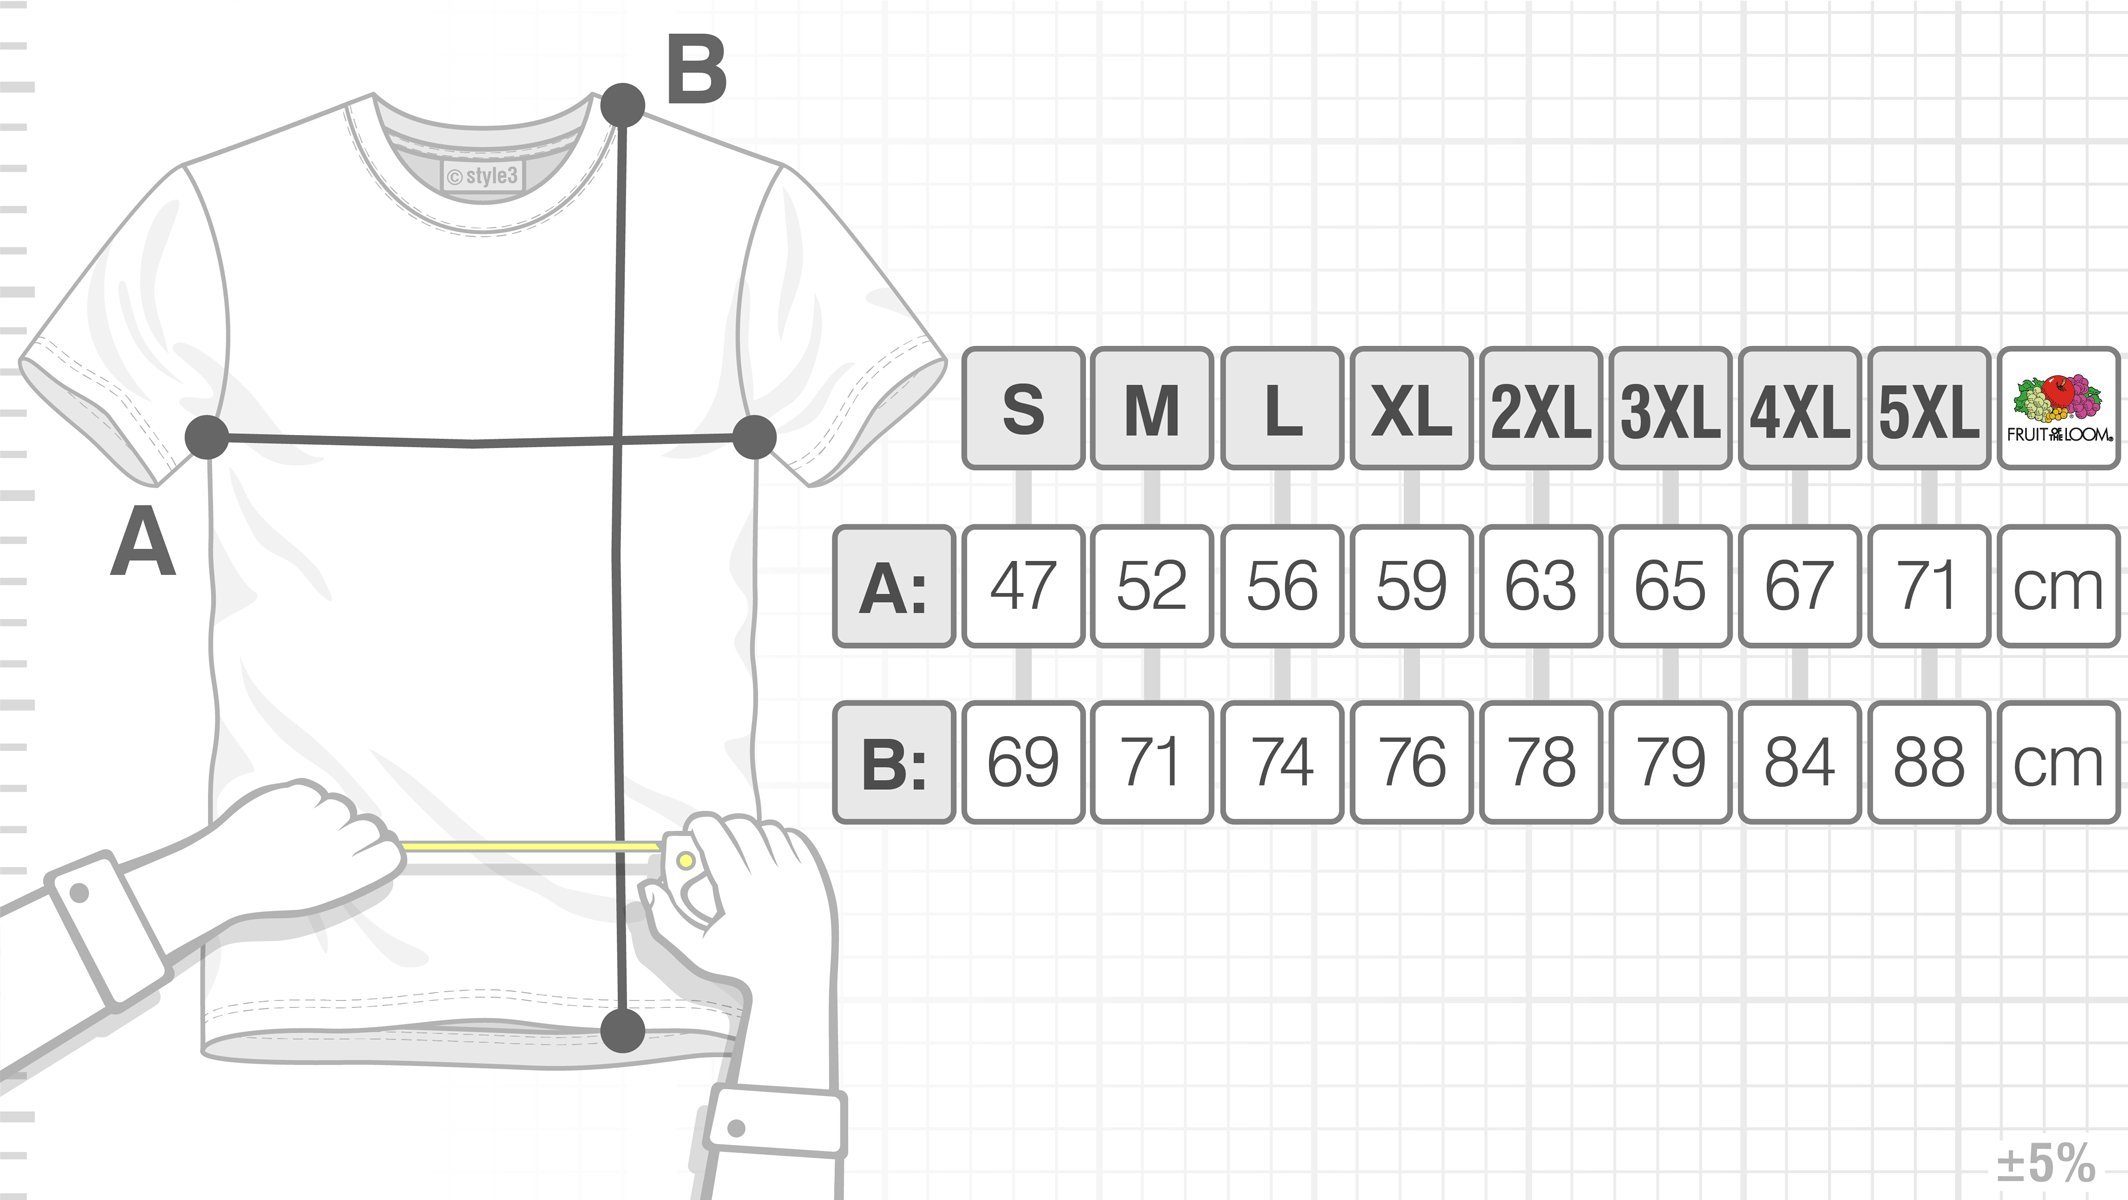 grün style3 Herren Cube Dreieck Print-Shirt T-Shirt Escher bang Big Theory Sheldon Cooper würfel Penrose